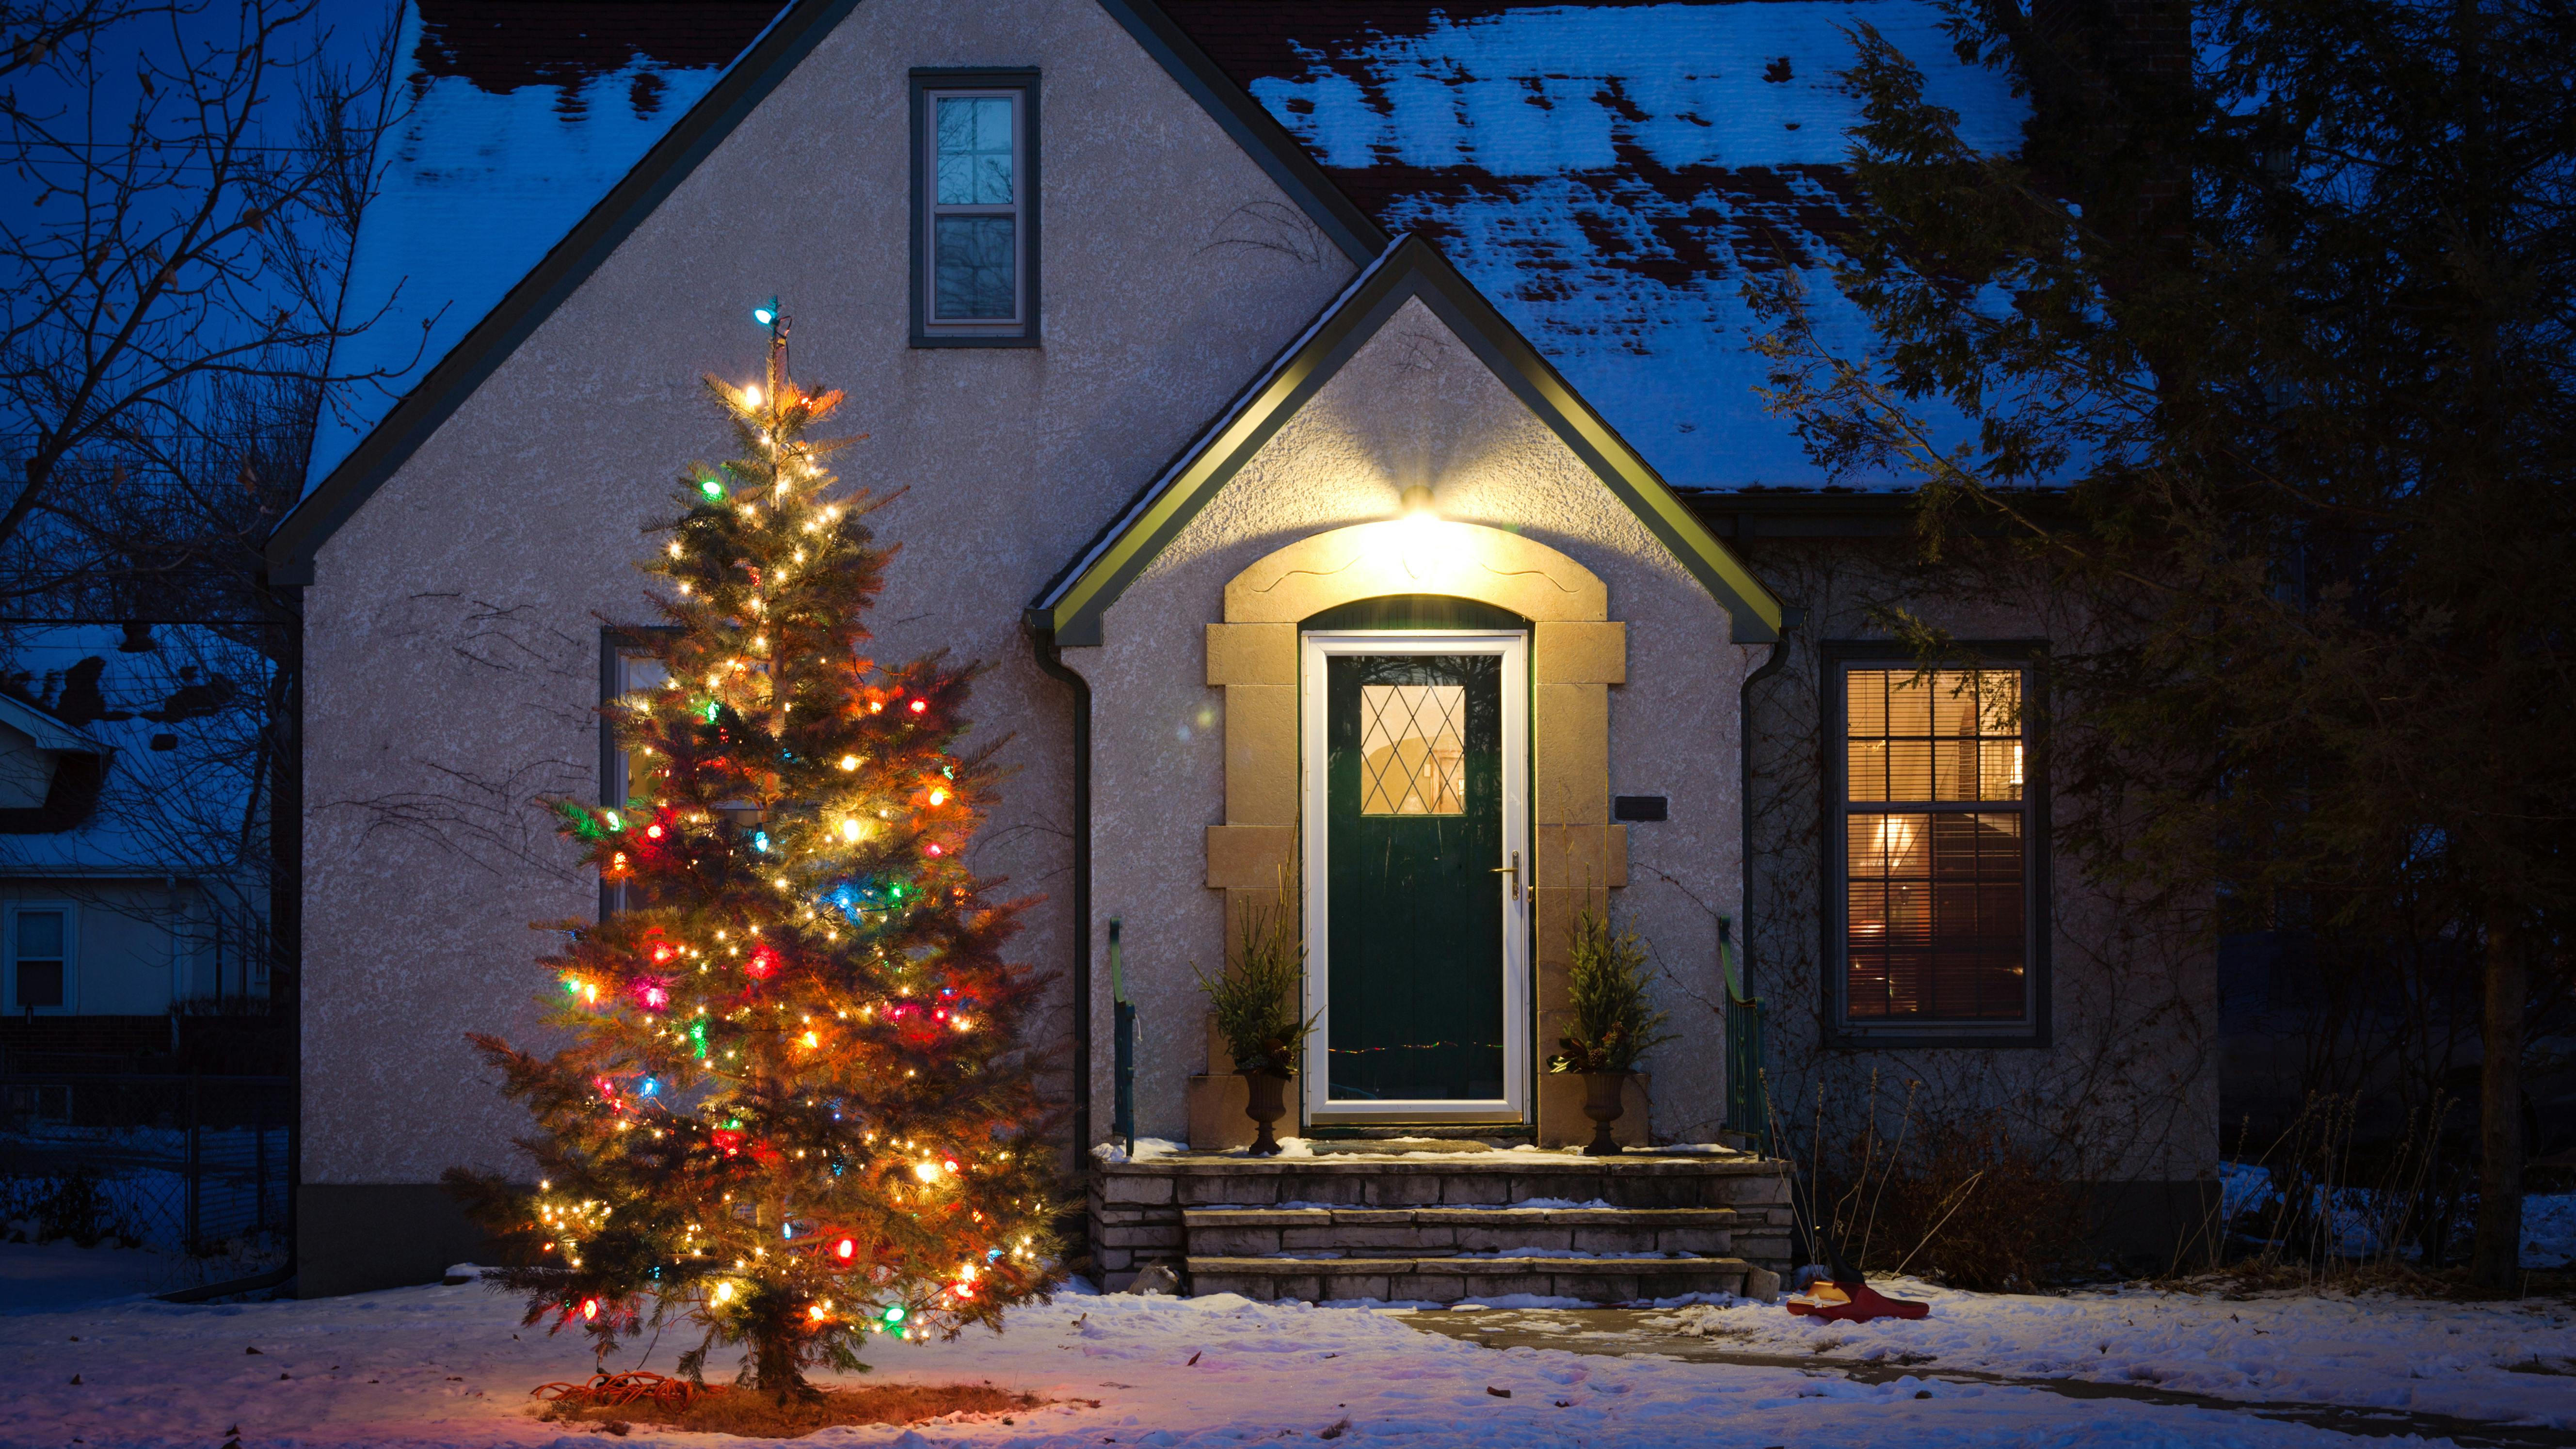 Outdoor-Weihnachtsbaum, dekoriert mit Lichtern. Die Umgebung erinnert an einen spießigen deutschen Vorort.